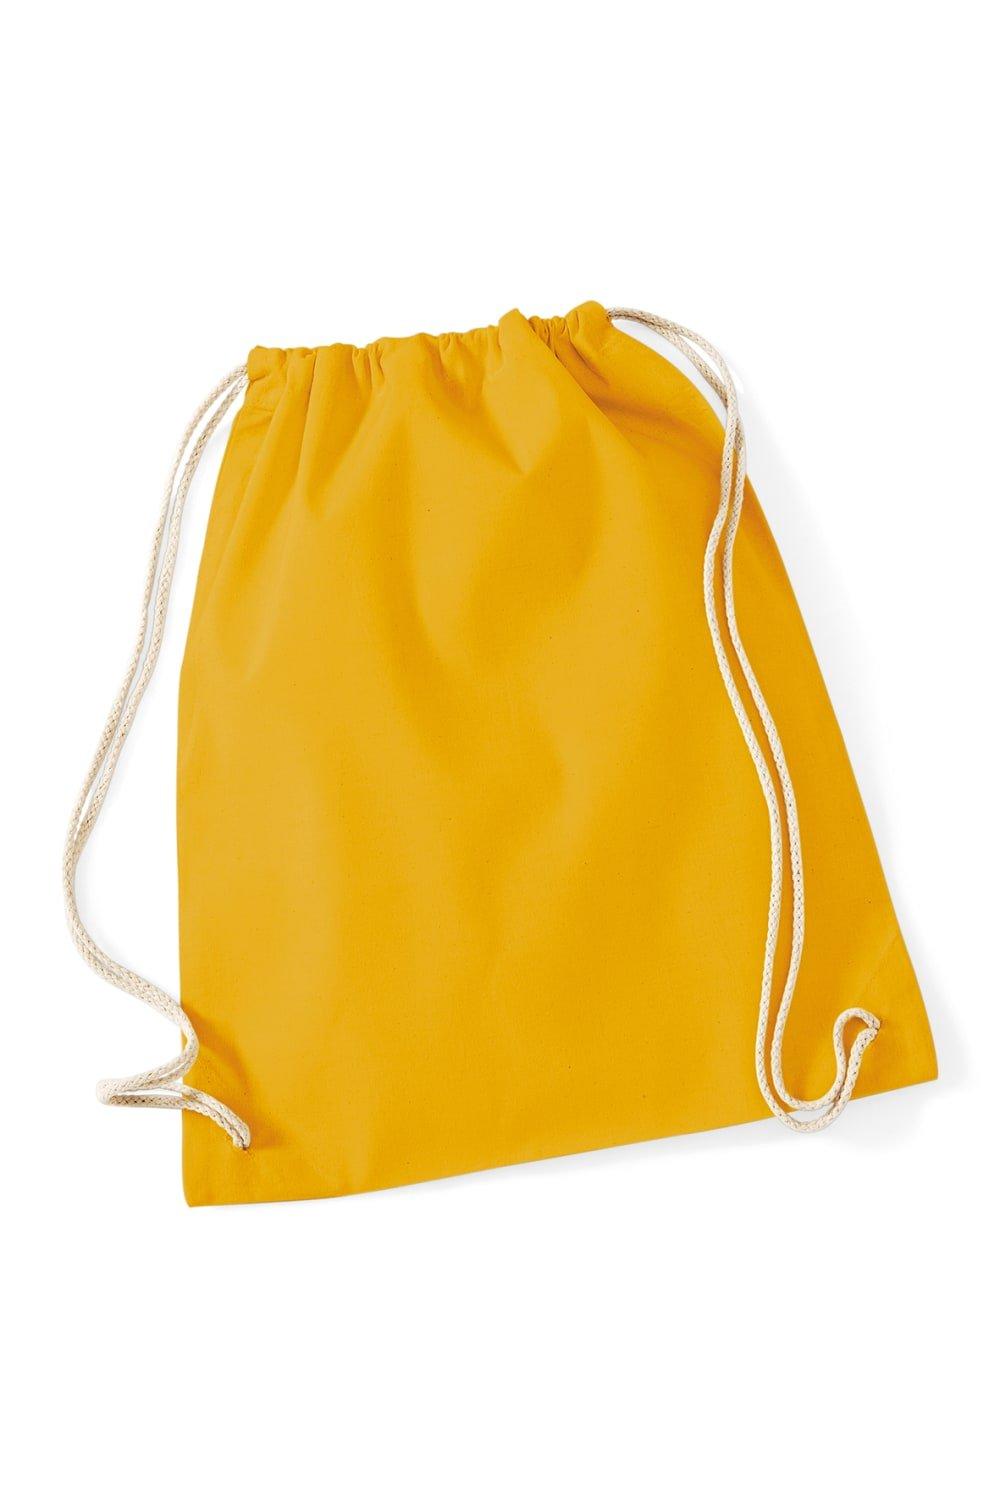 цена Хлопковая сумка Gymsac - 12 литров Westford Mill, желтый